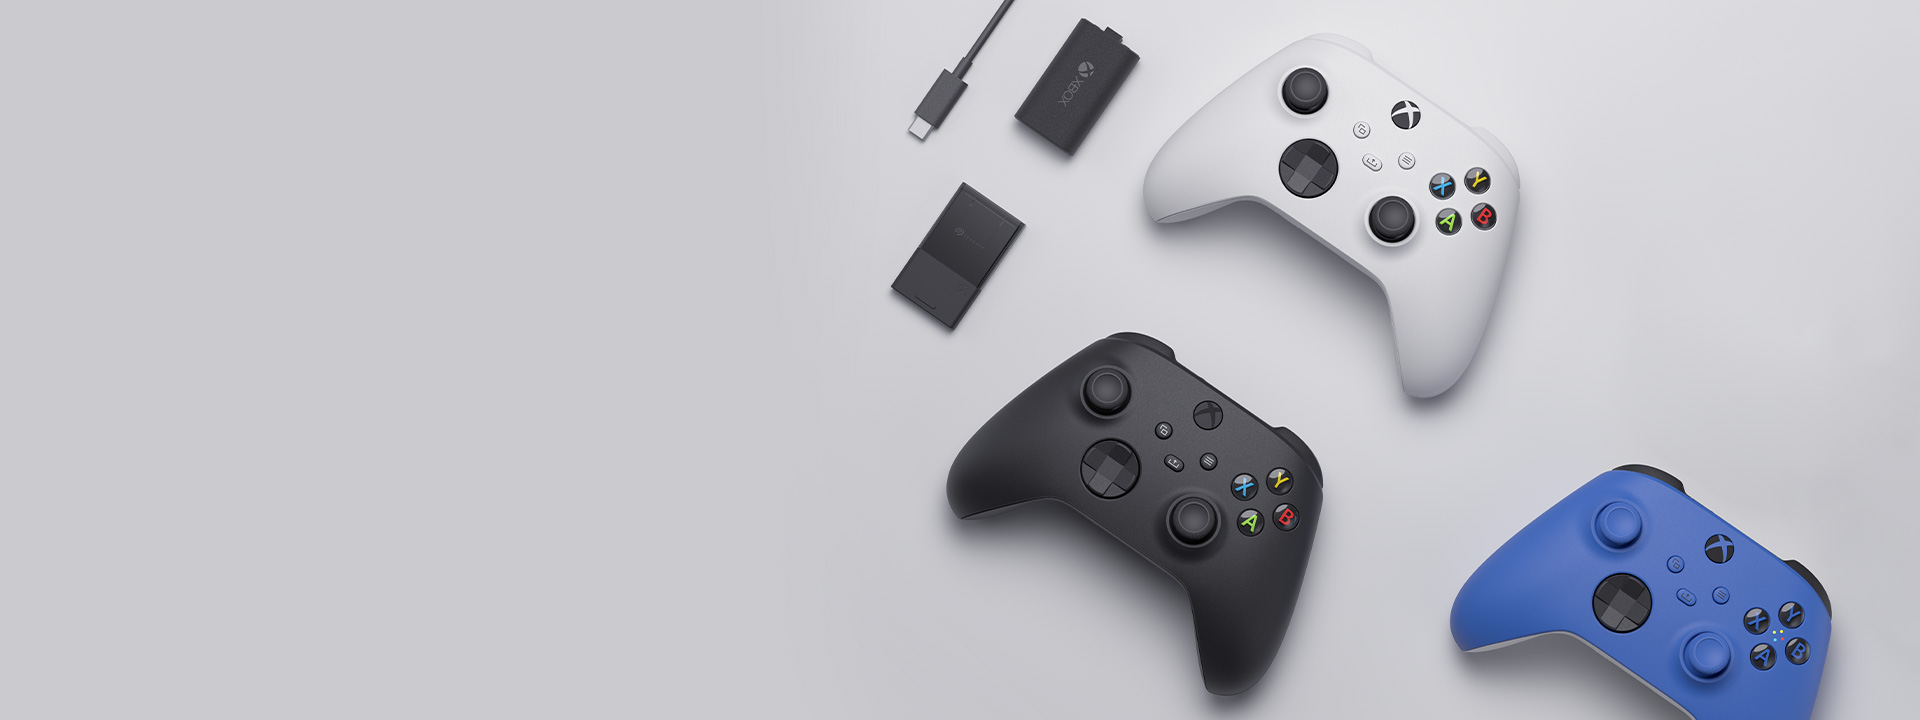 Различные аксессуары Xbox, включая беспроводной геймпад Xbox, комплект для зарядки Play and Charge, а также карту расширения памяти Seagate для Xbox Series X|S, расположены рядом друг с другом.